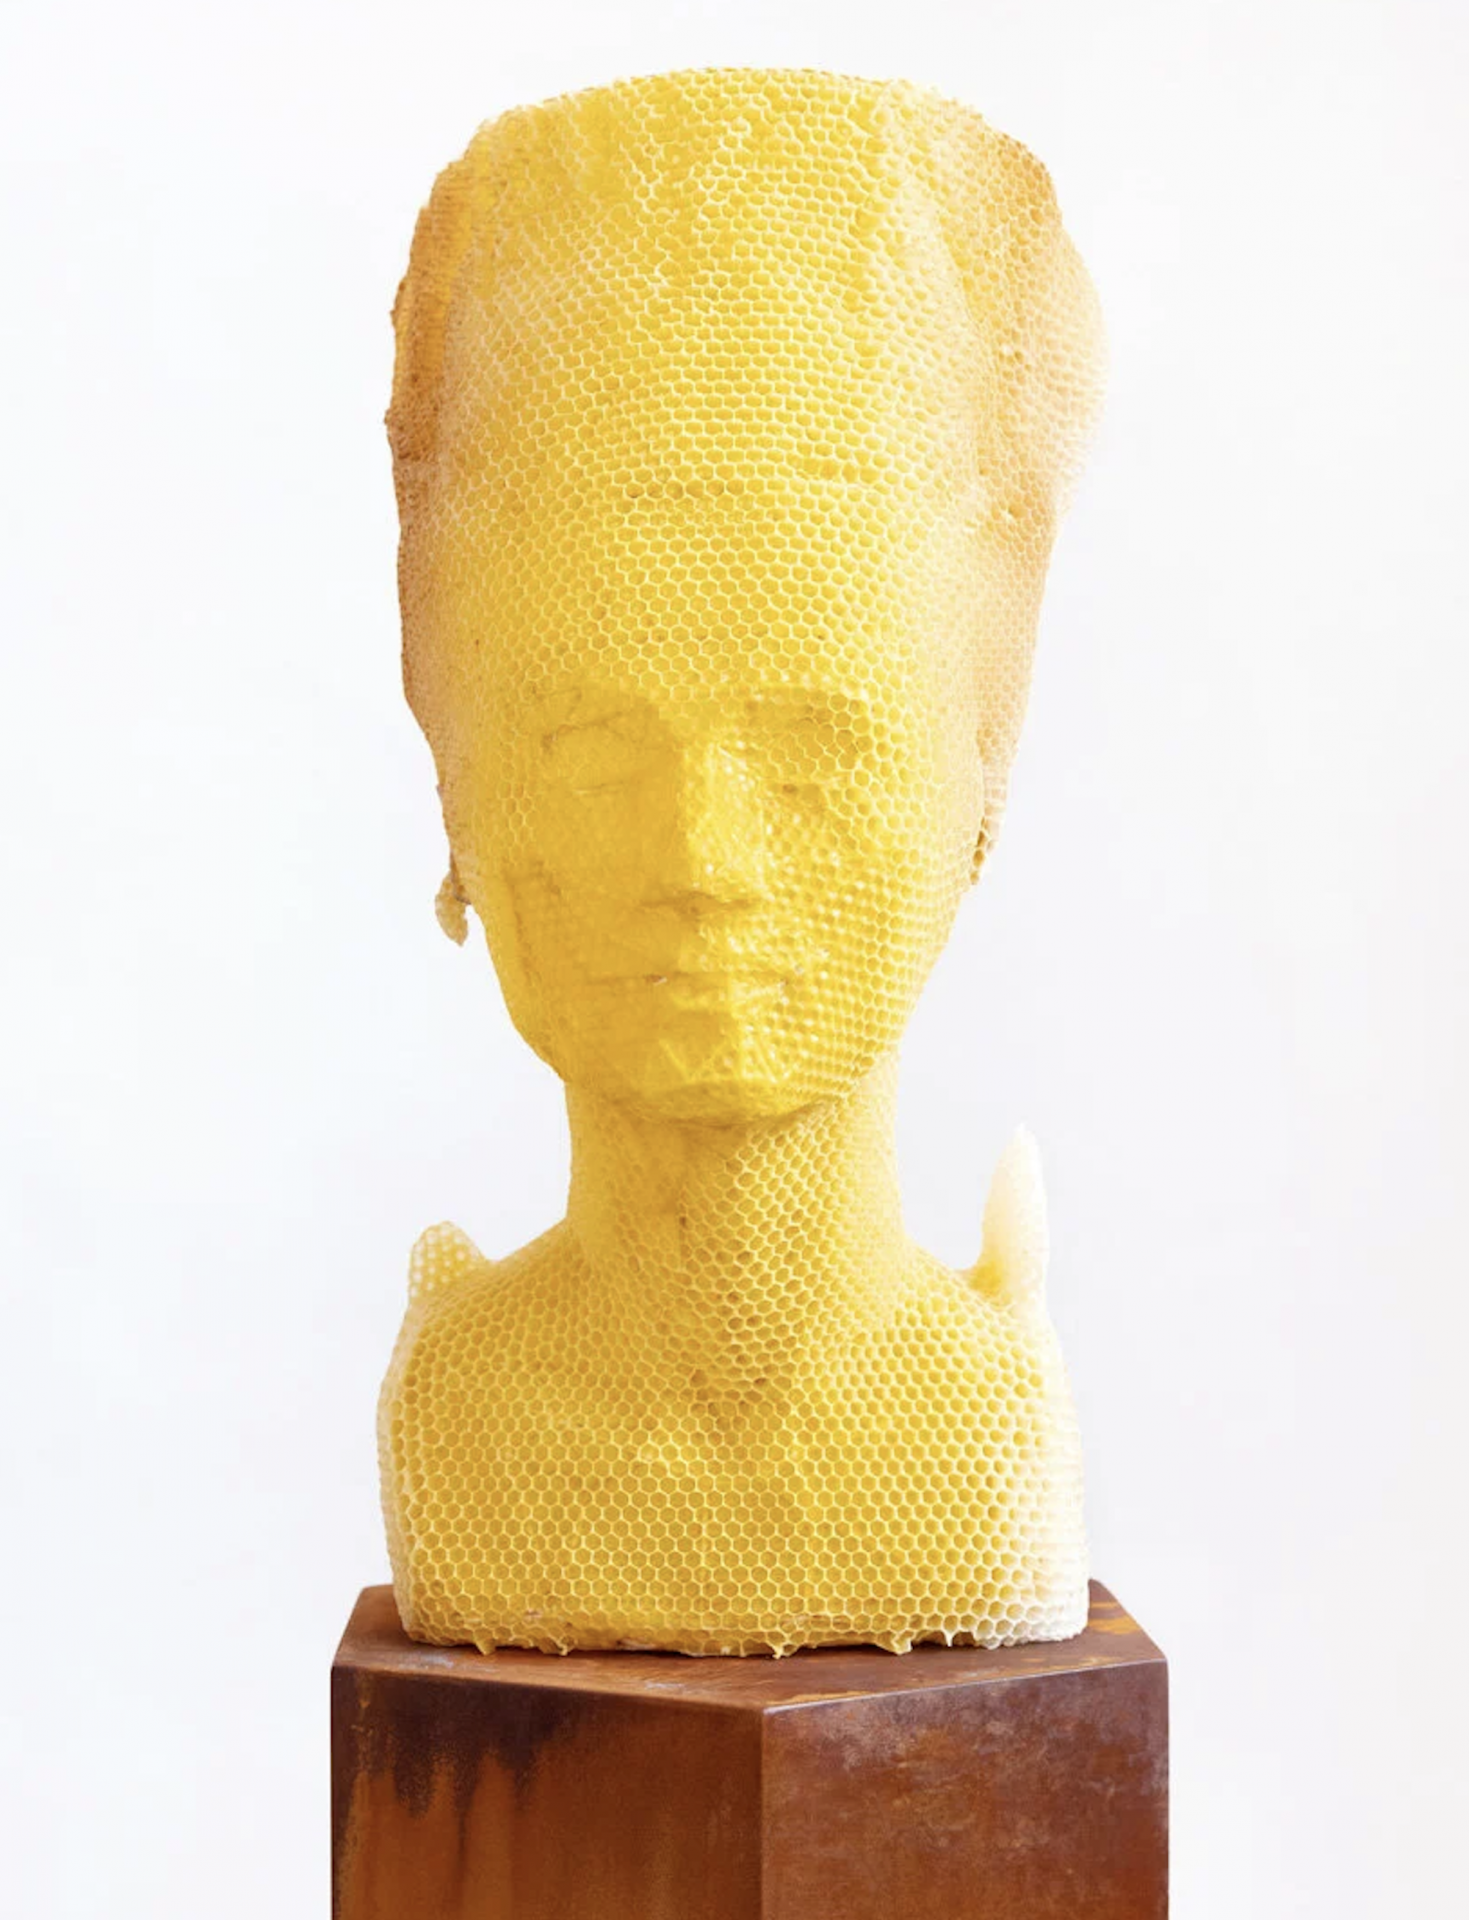 L'artiste Tomáš Libertíny laisse 60 000 abeilles sculpter le buste de Néfertiti